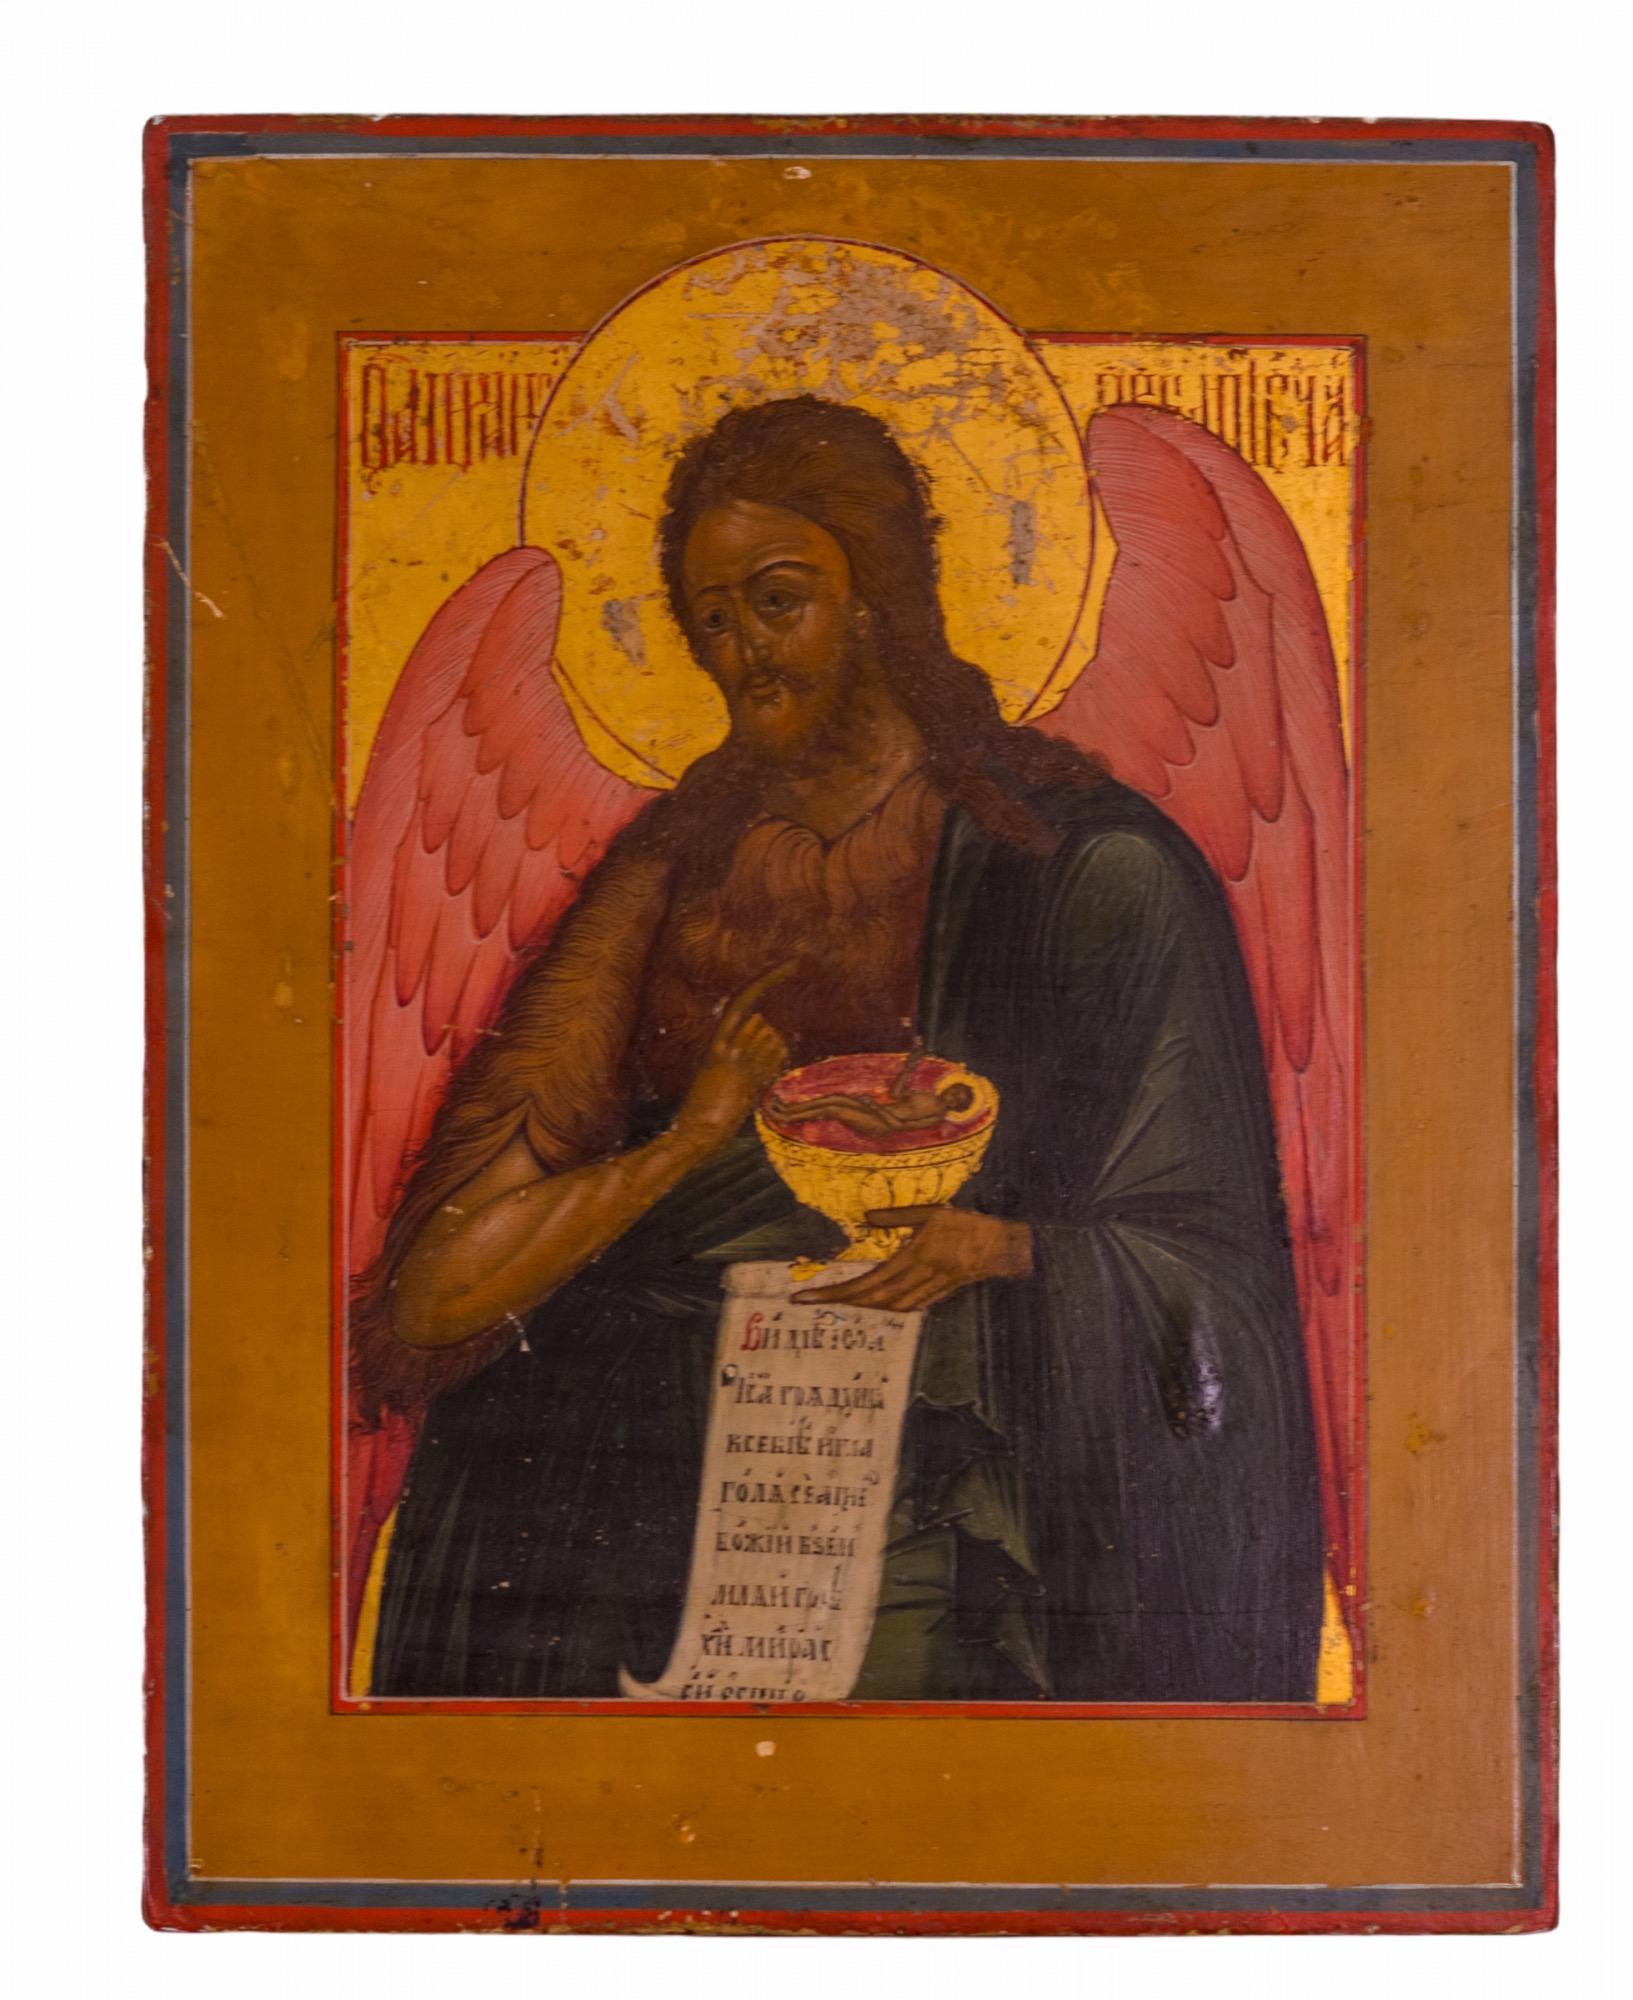 Doré Groupe de huit icônes russes et grecques orthodoxes des 17e, 18e et 19e siècles